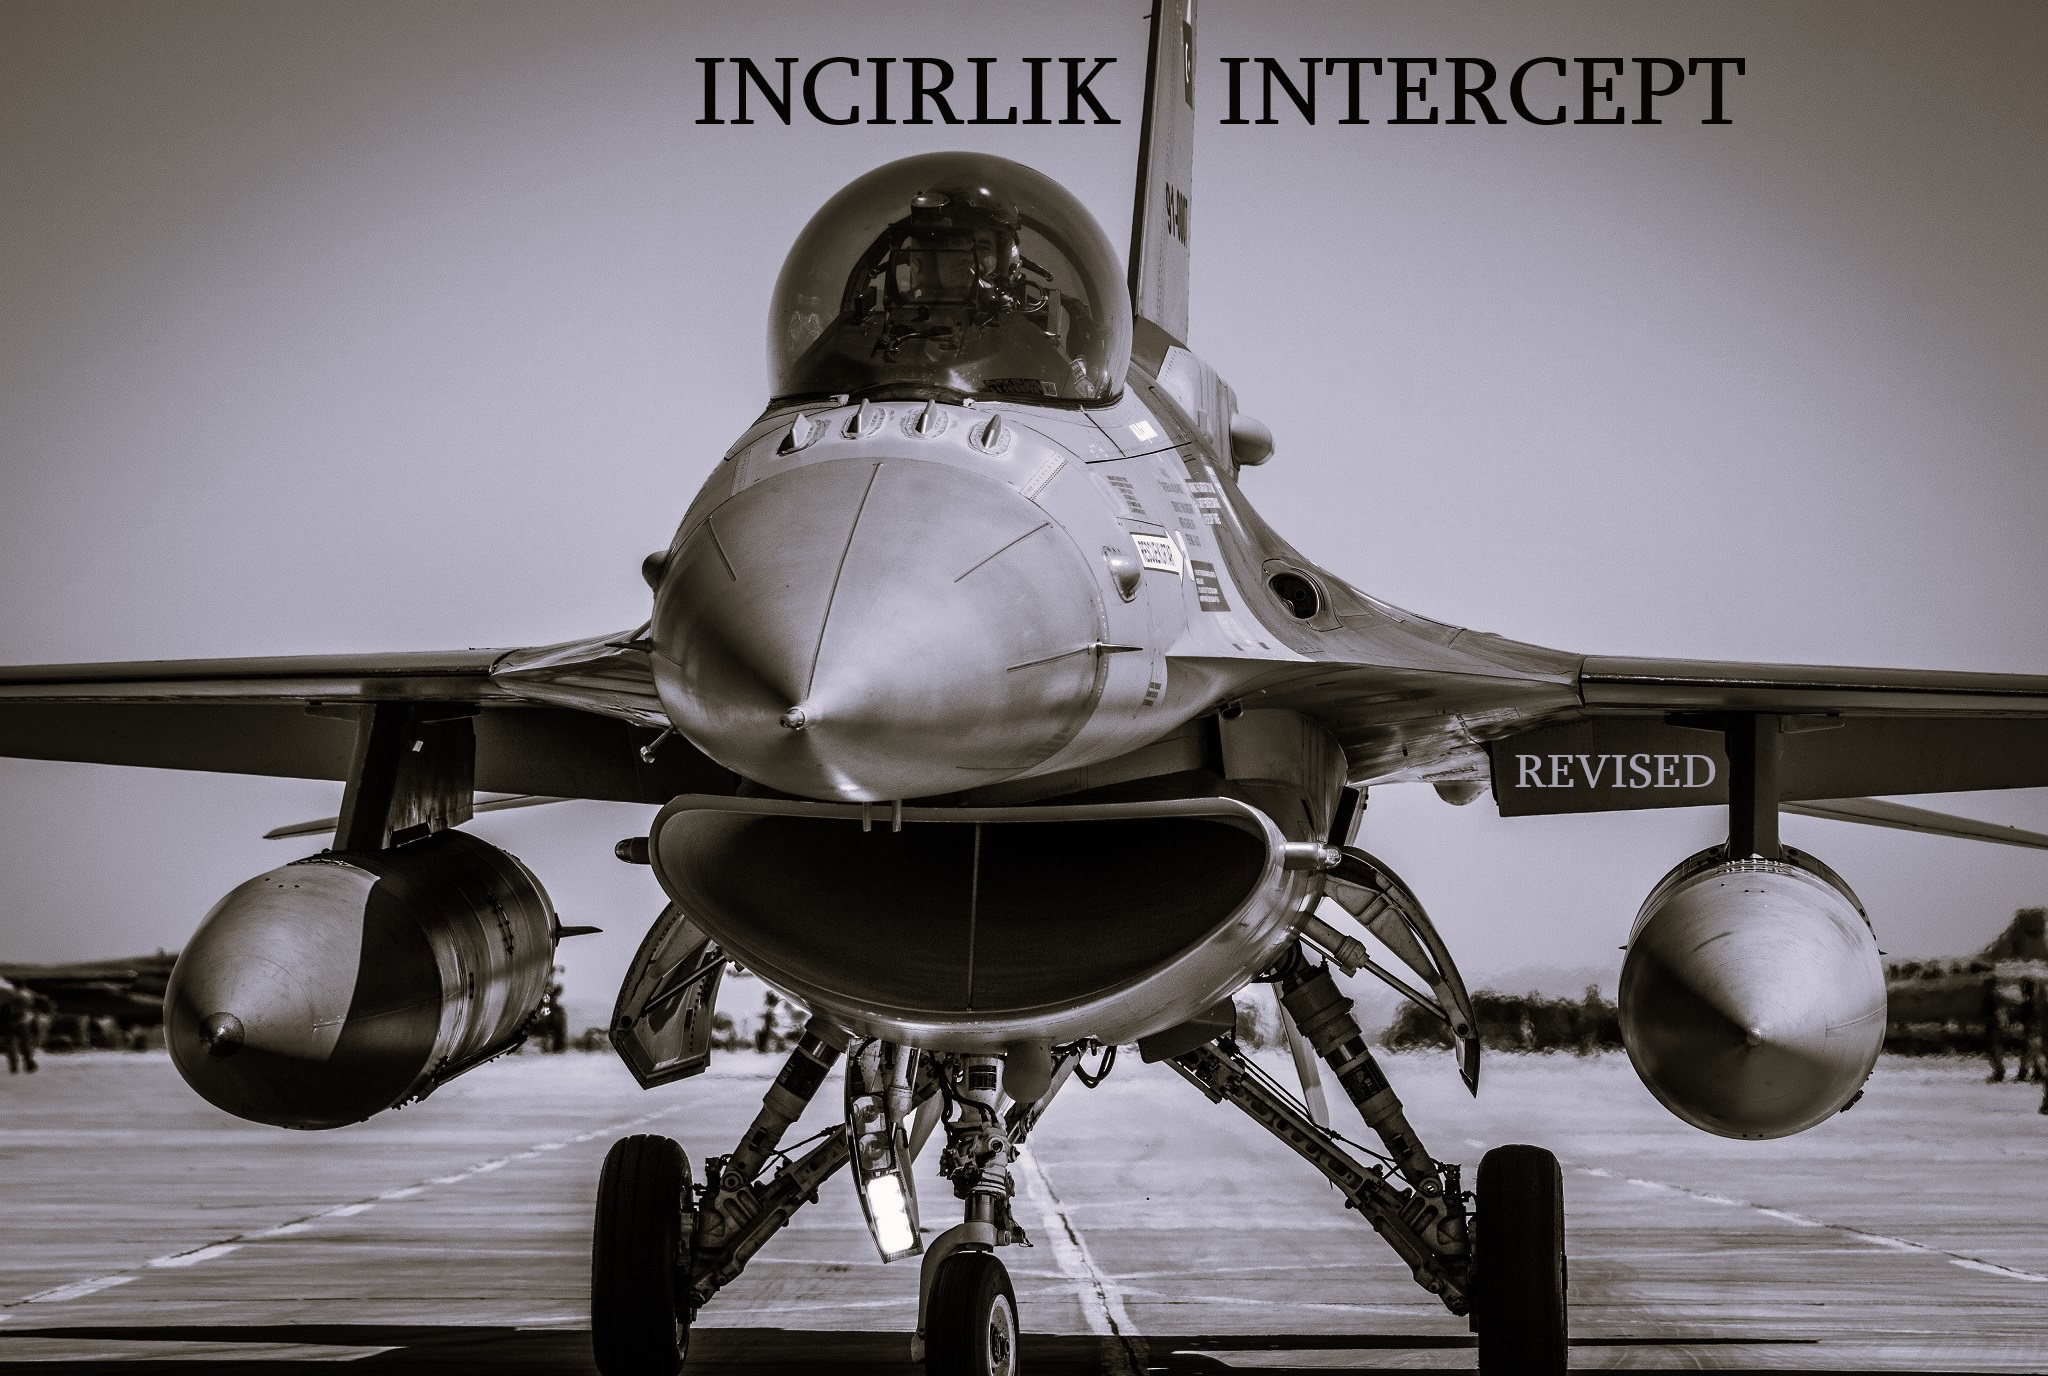 Incirlik Intercept ***revised 